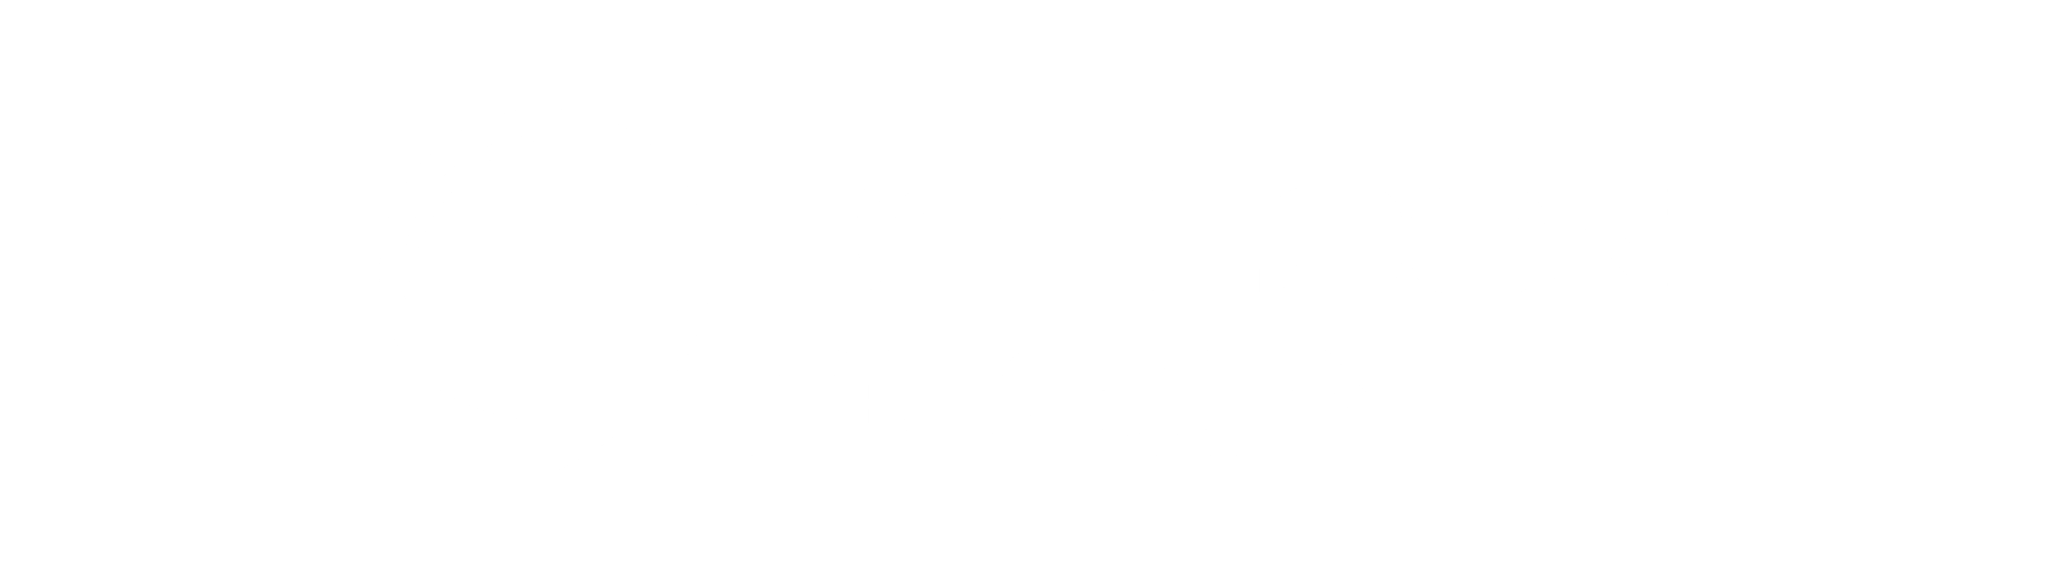 Balloon Design